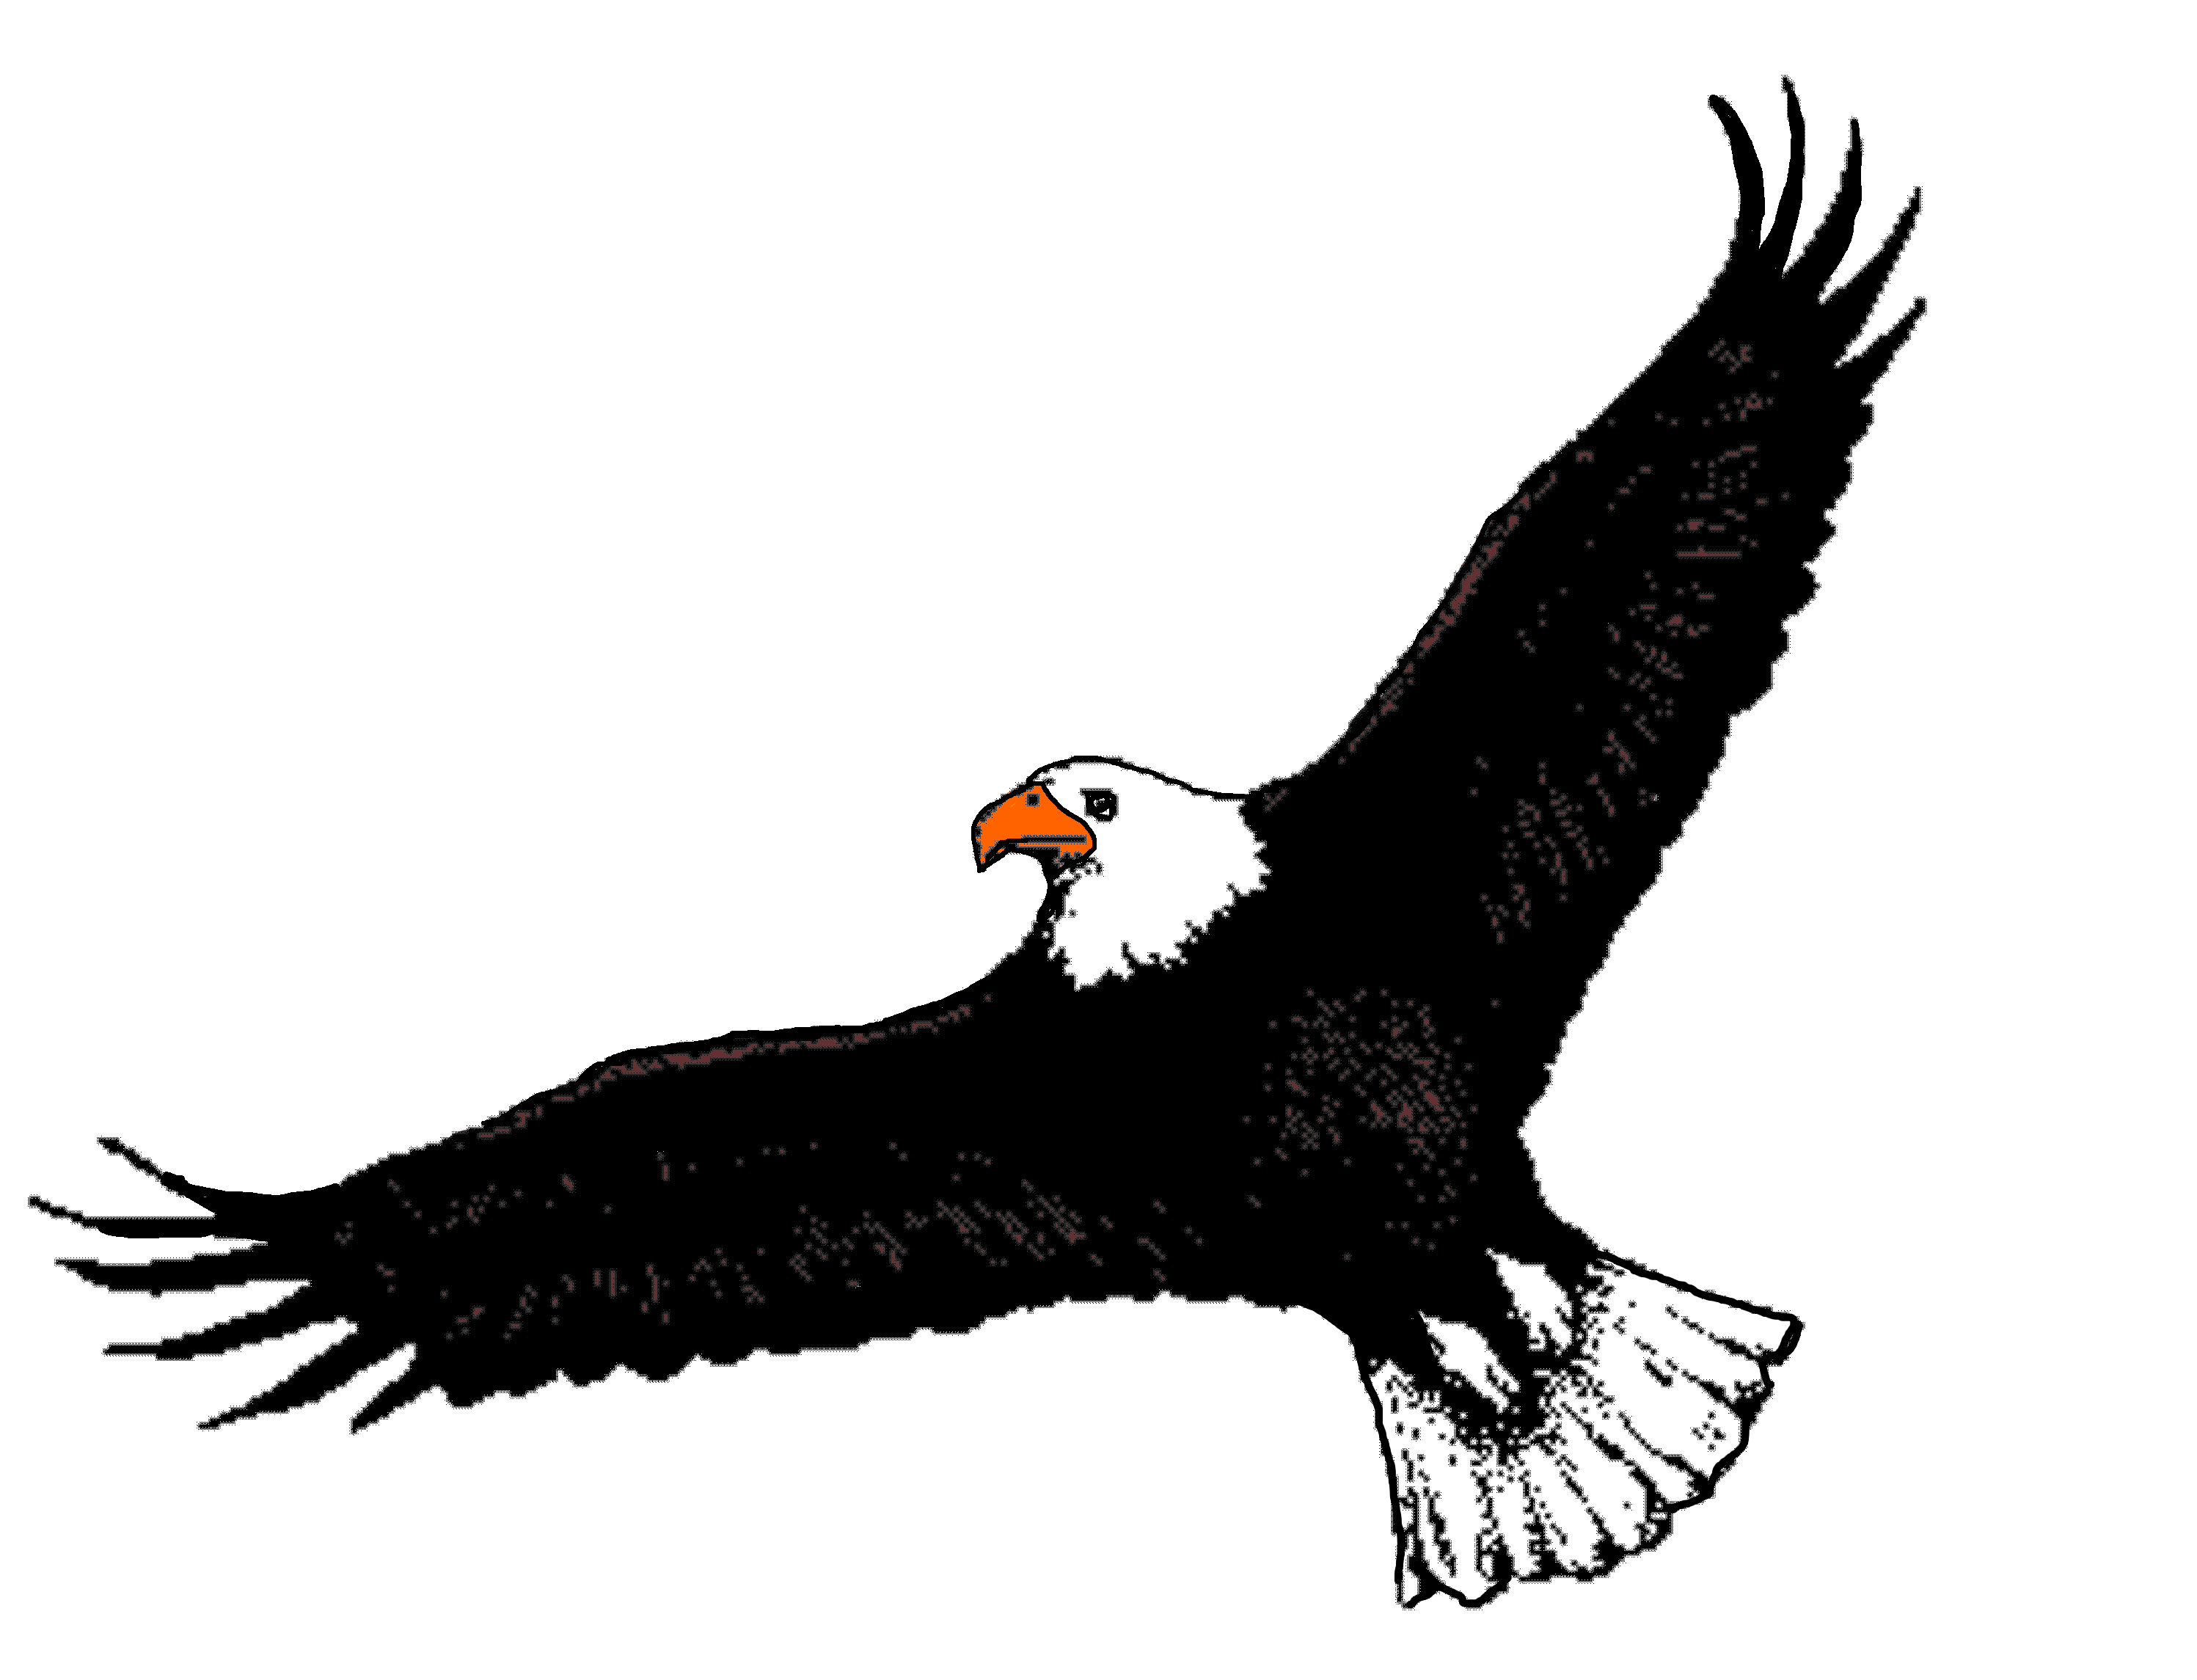 soaring eagle clip art free - photo #38